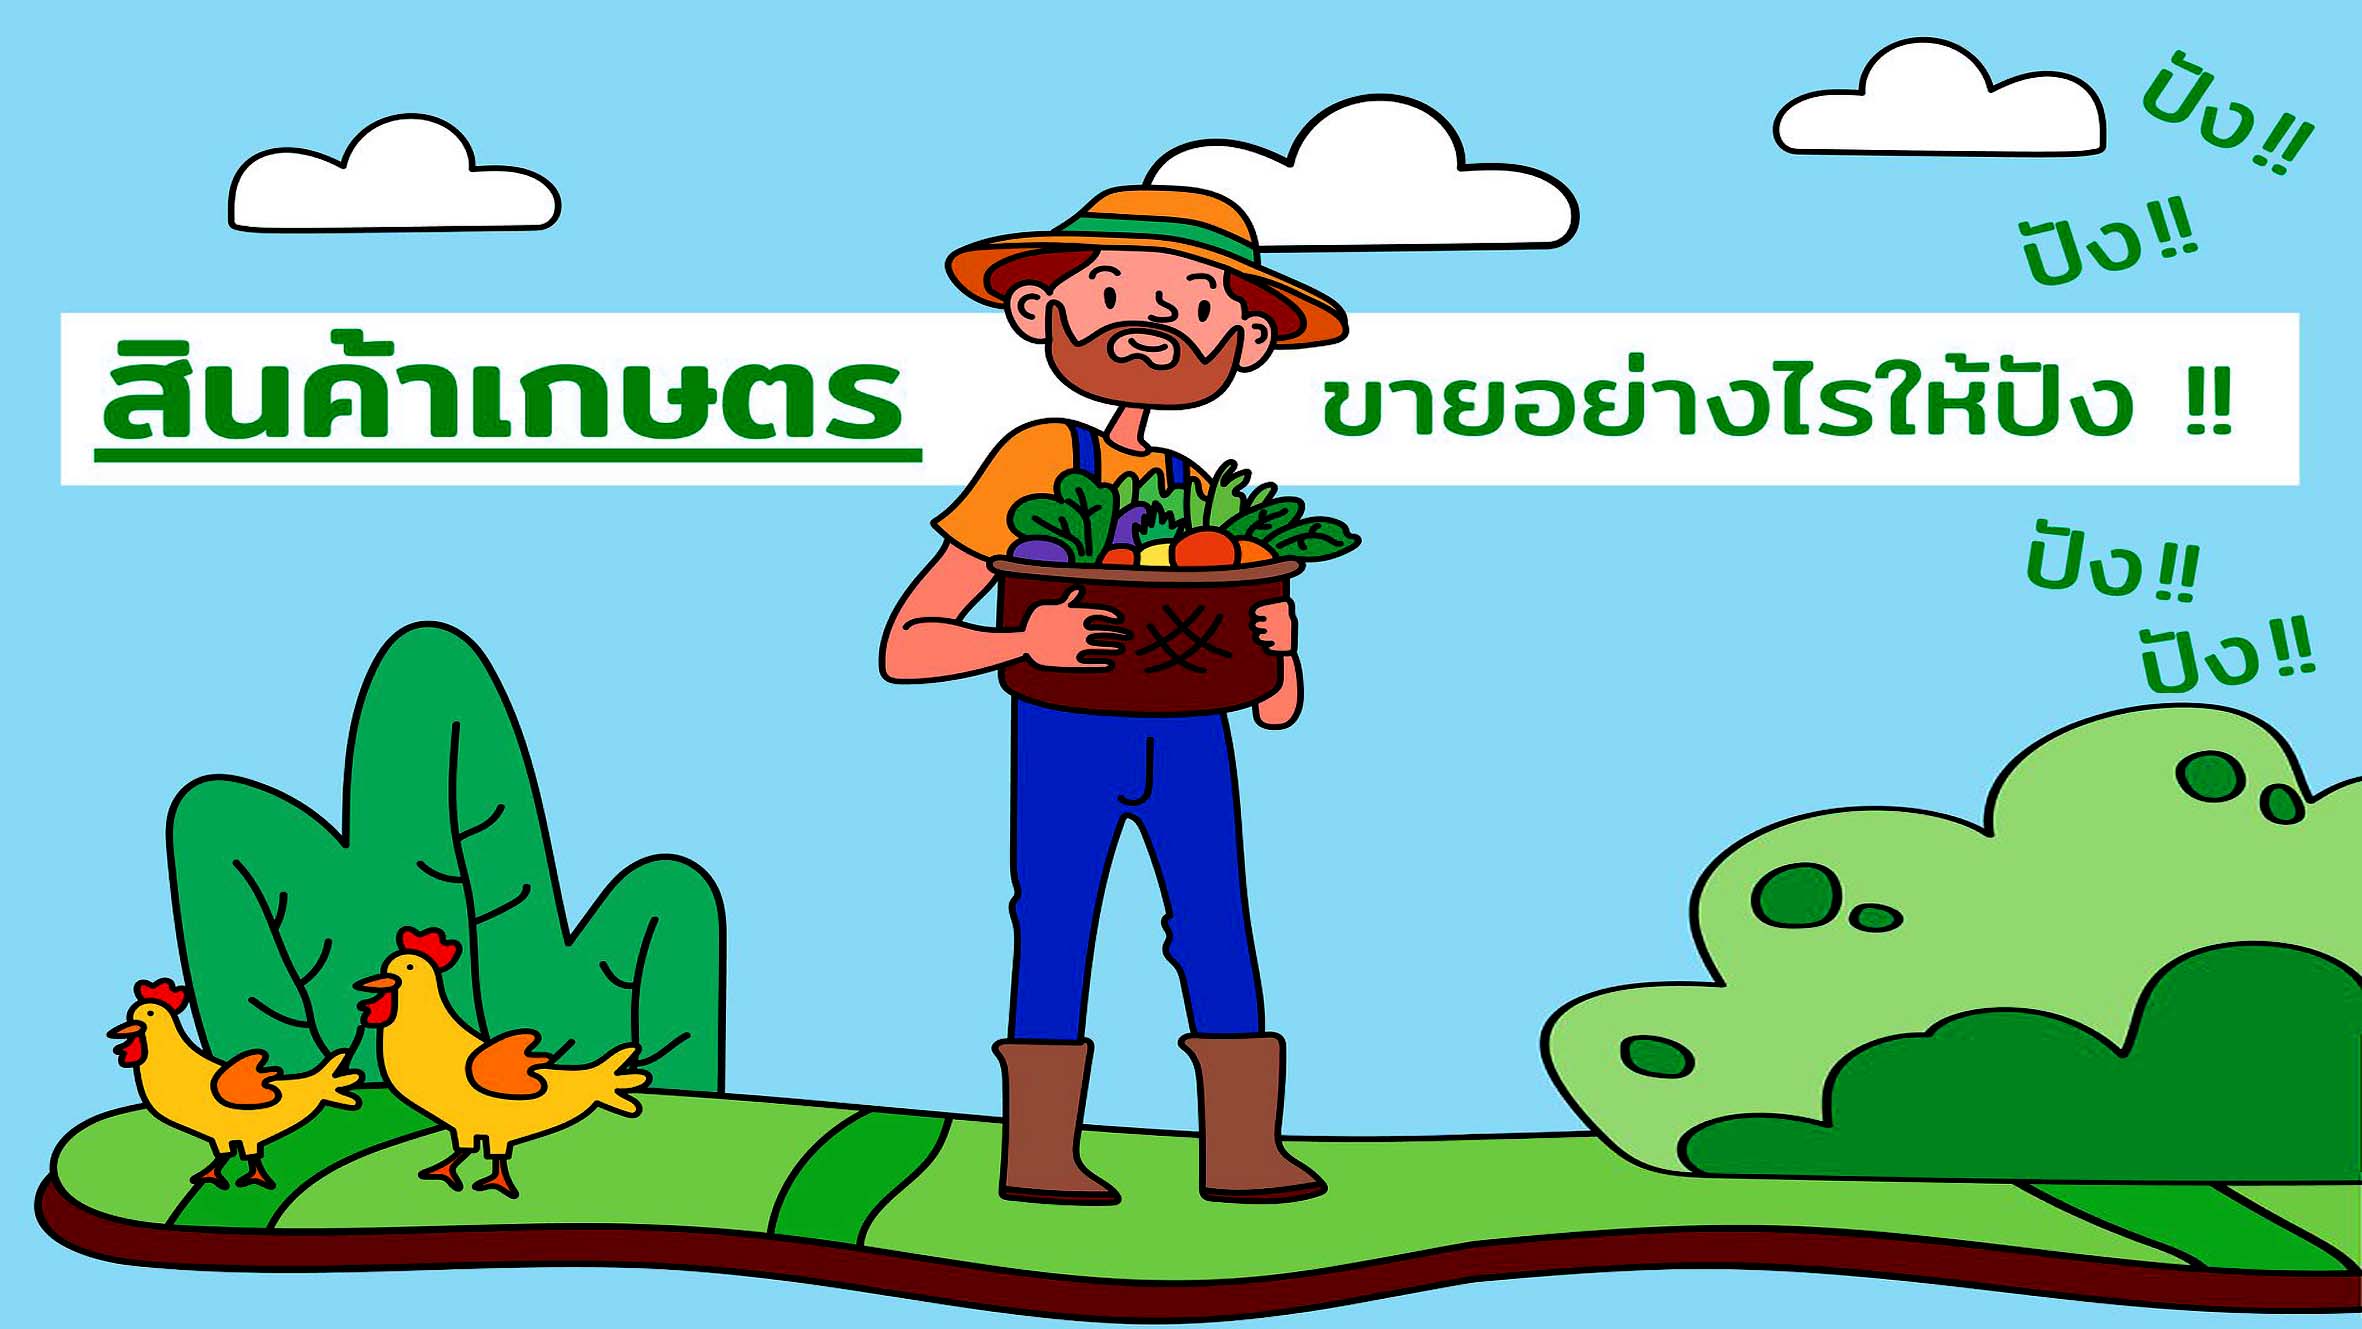 สินค้าเกษตรของไทย ขายอย่างไรให้ปัง ๆ !!